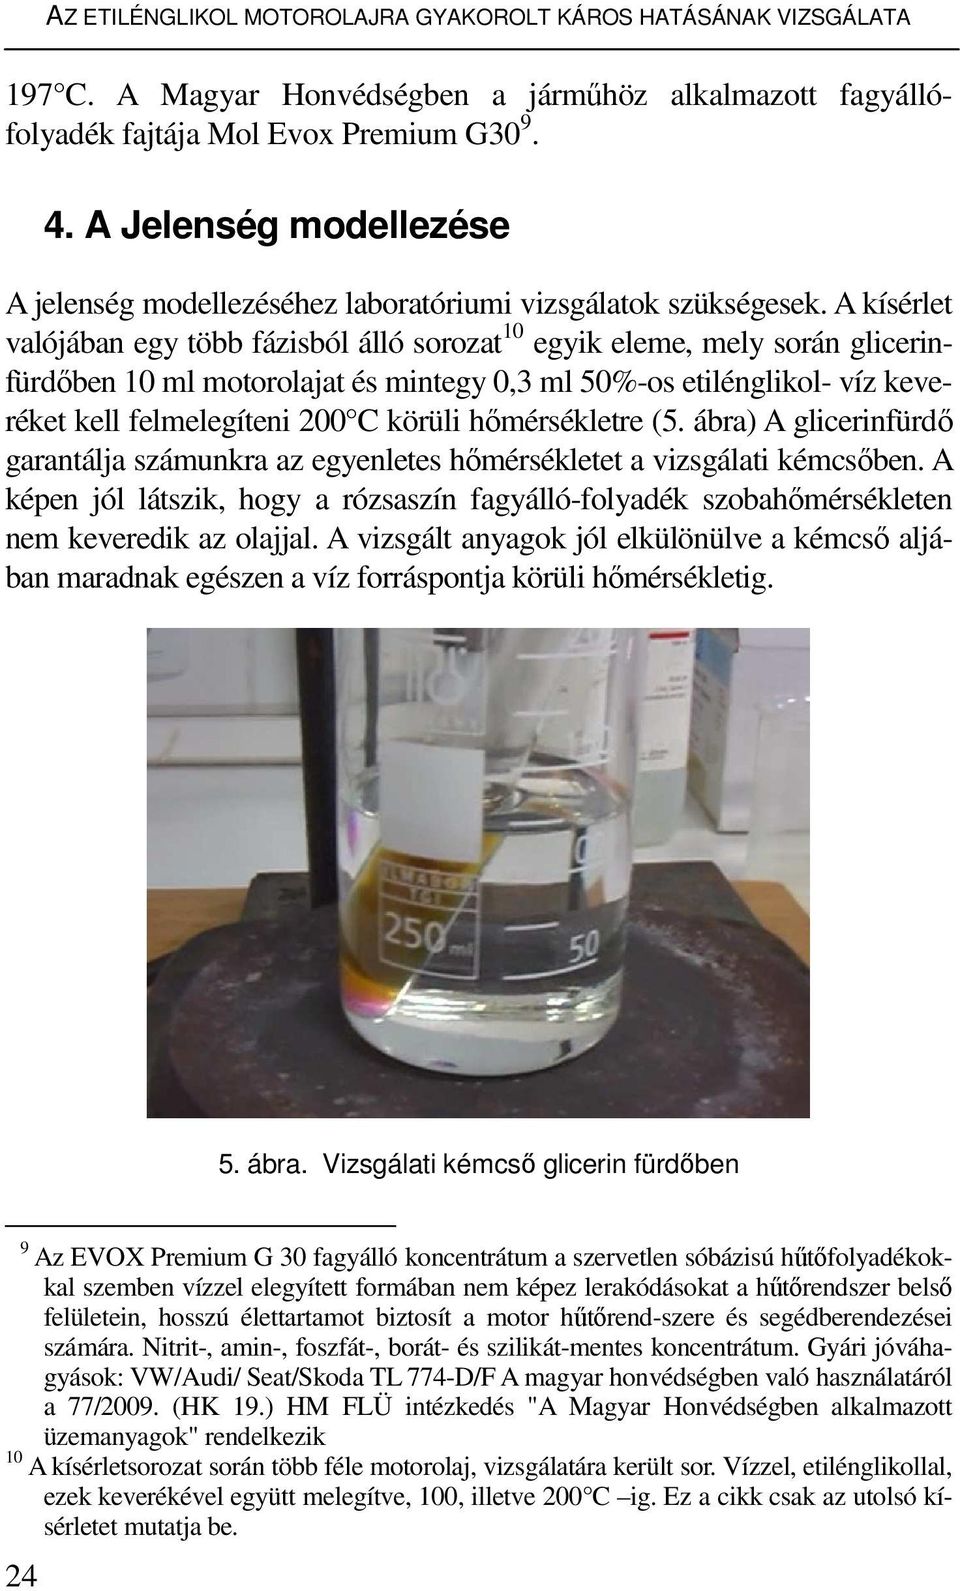 A kísérlet valójában egy több fázisból álló sorozat 10 egyik eleme, mely során glicerinfürdıben 10 ml motorolajat és mintegy 0,3 ml 50%-os etilénglikol- víz keveréket kell felmelegíteni 200 C körüli